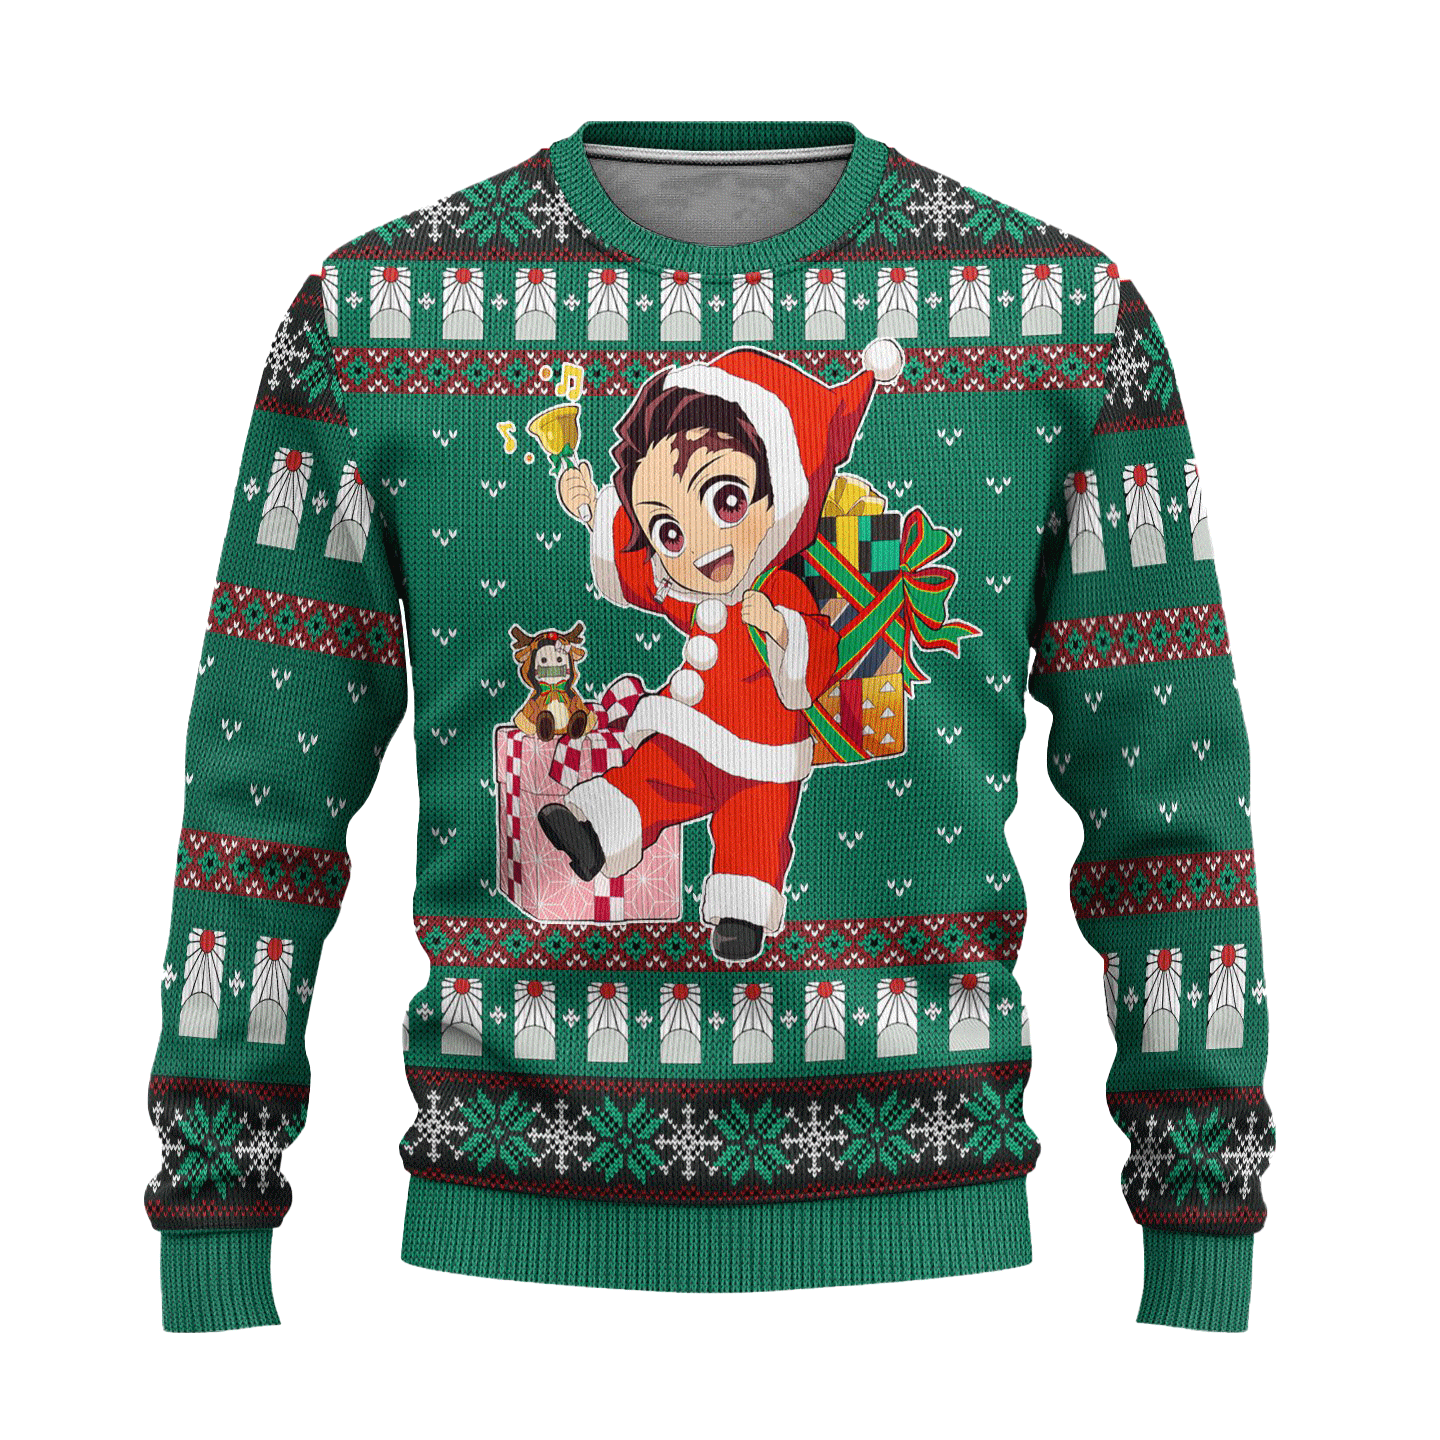 Tanjiro Kamado Demon Slayer Anime Ugly Christmas Sweater Xmas Gift